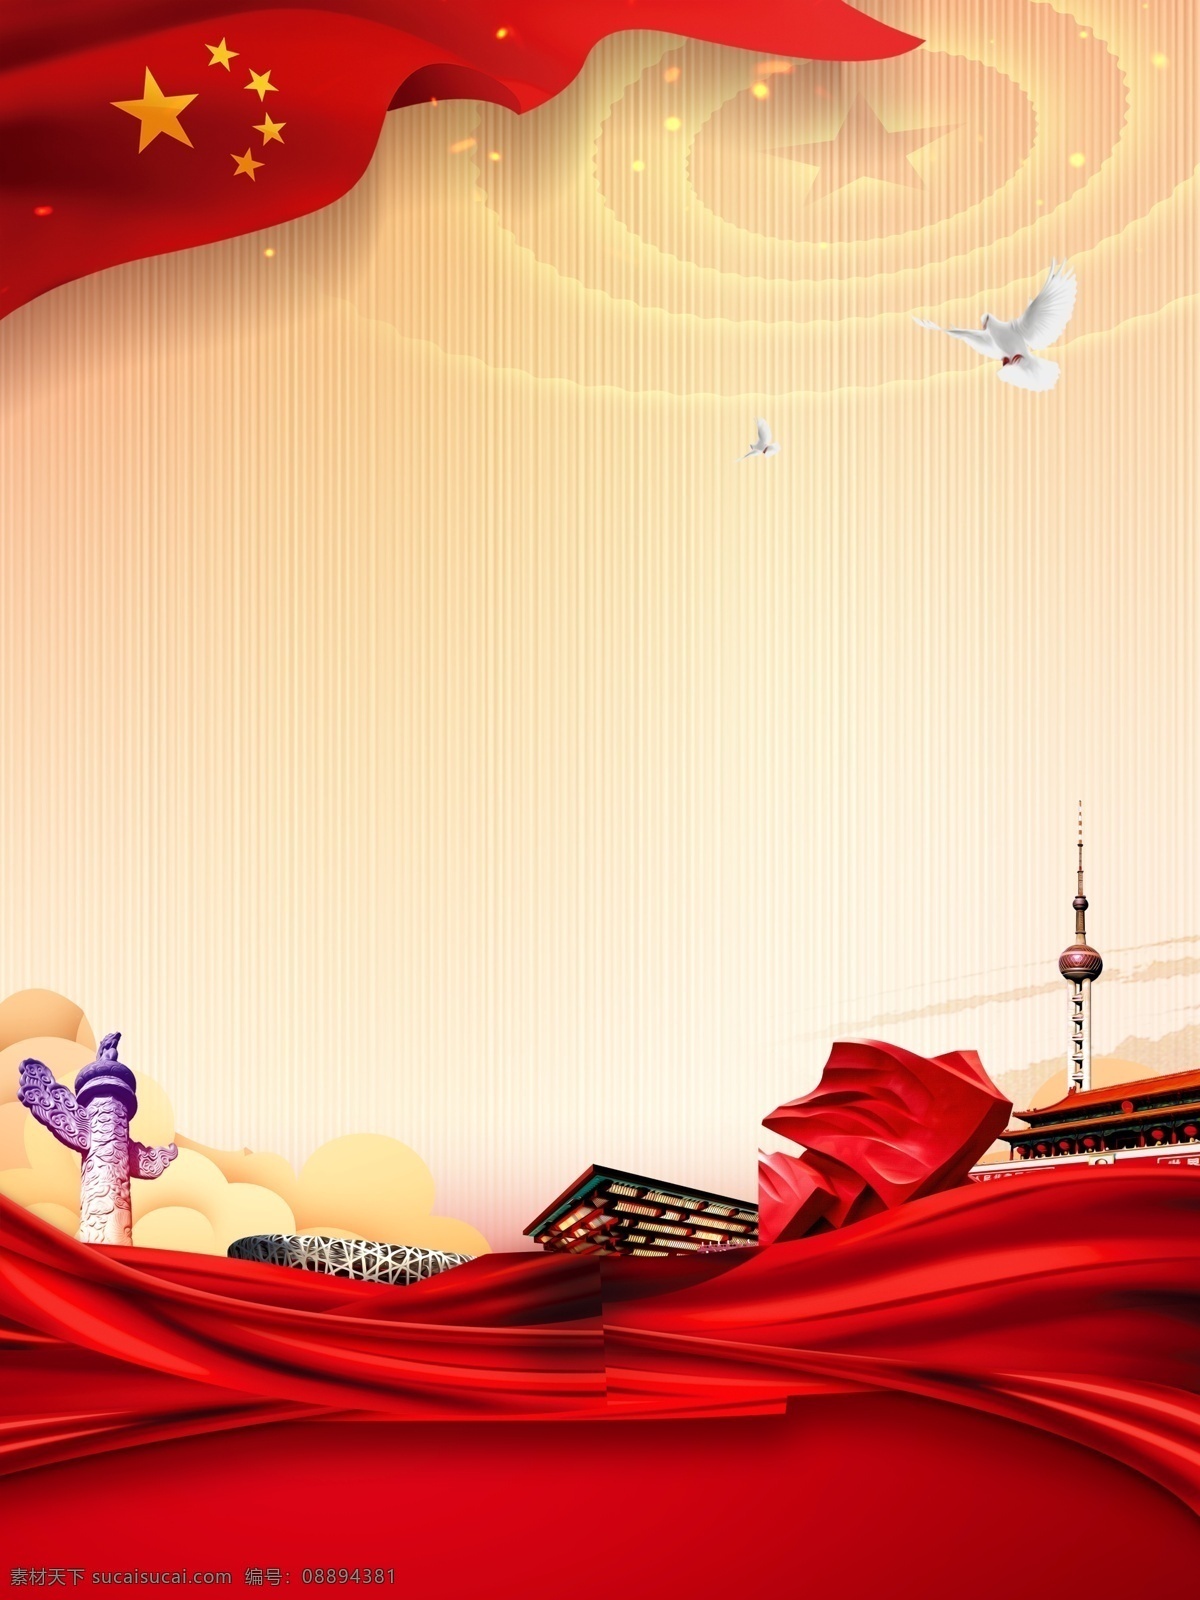 大气 核心 价值观 扇形 背景 中国风 飘带 彩色背景 清新背景 背景素材 华表 红旗 狮子